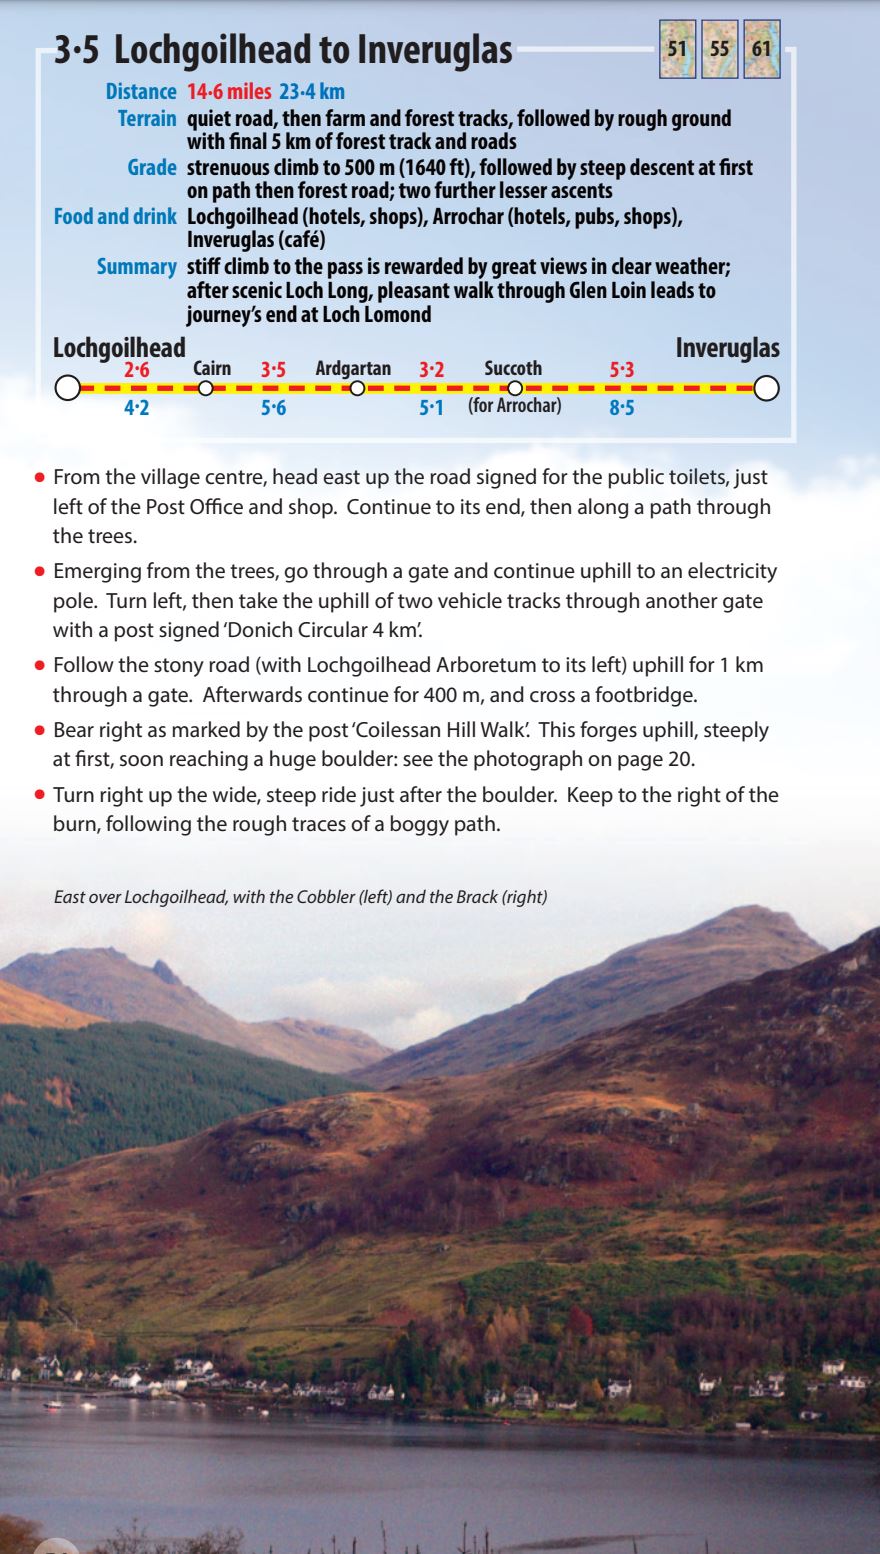 Guide de randonnées (en anglais) - Loch Lomond & Cowal Way | Rucksack Readers guide de voyage Rucksack Readers 